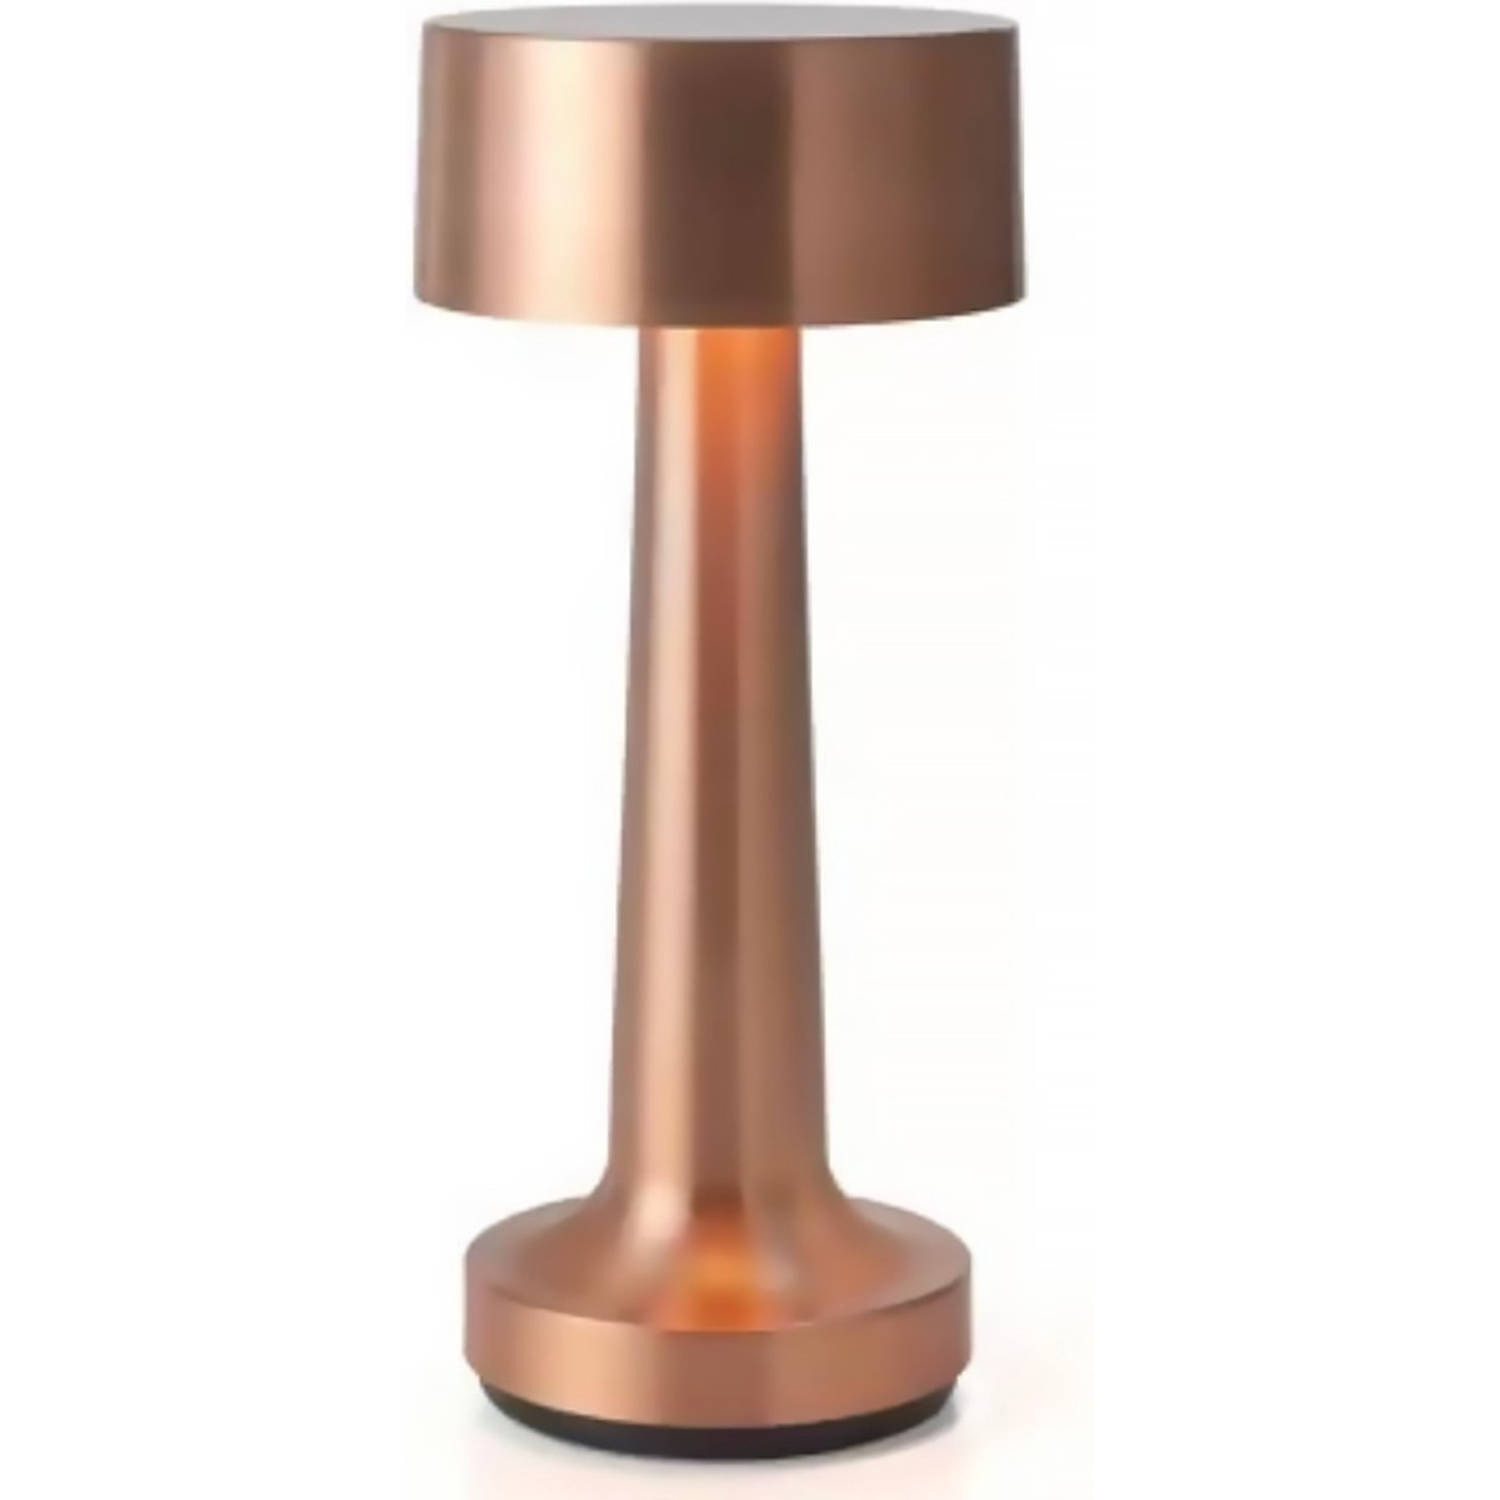 Goliving tafellamp op batterijen - Oplaadbaar en dimbaar - Moderne touch lamp roségoud - Nachtlamp draadloos